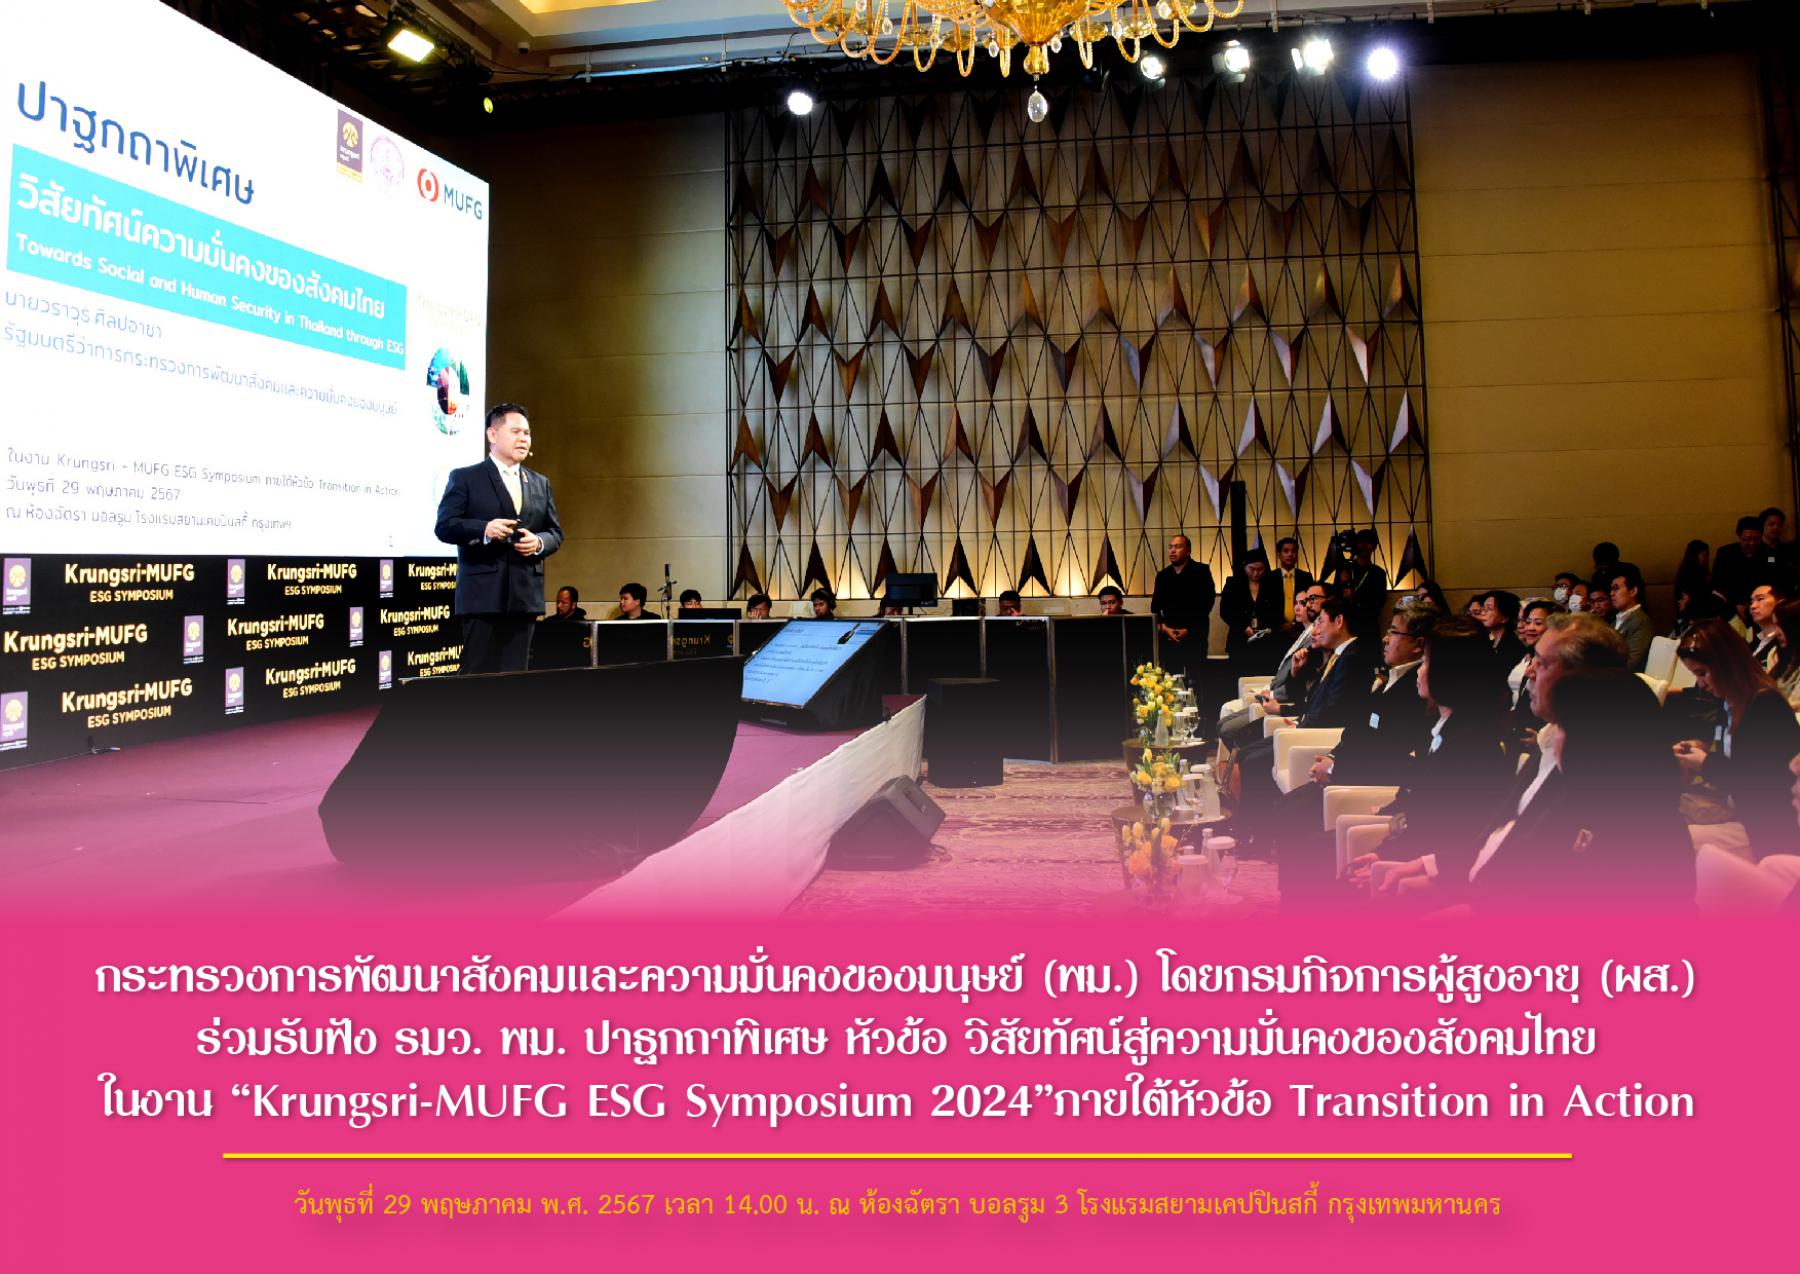 พม.  โดยกรมกิจการผู้สูงอายุ (ผส.) ร่วมรับฟัง รมว. พม. ปาฐกถาพิเศษ หัวข้อ วิสัยทัศน์สู่ความมั่นคงของสังคมไทย ในงาน “Krungsri-MUFG ESG Symposium 2024”ภายใต้หัวข้อ Transition in Action